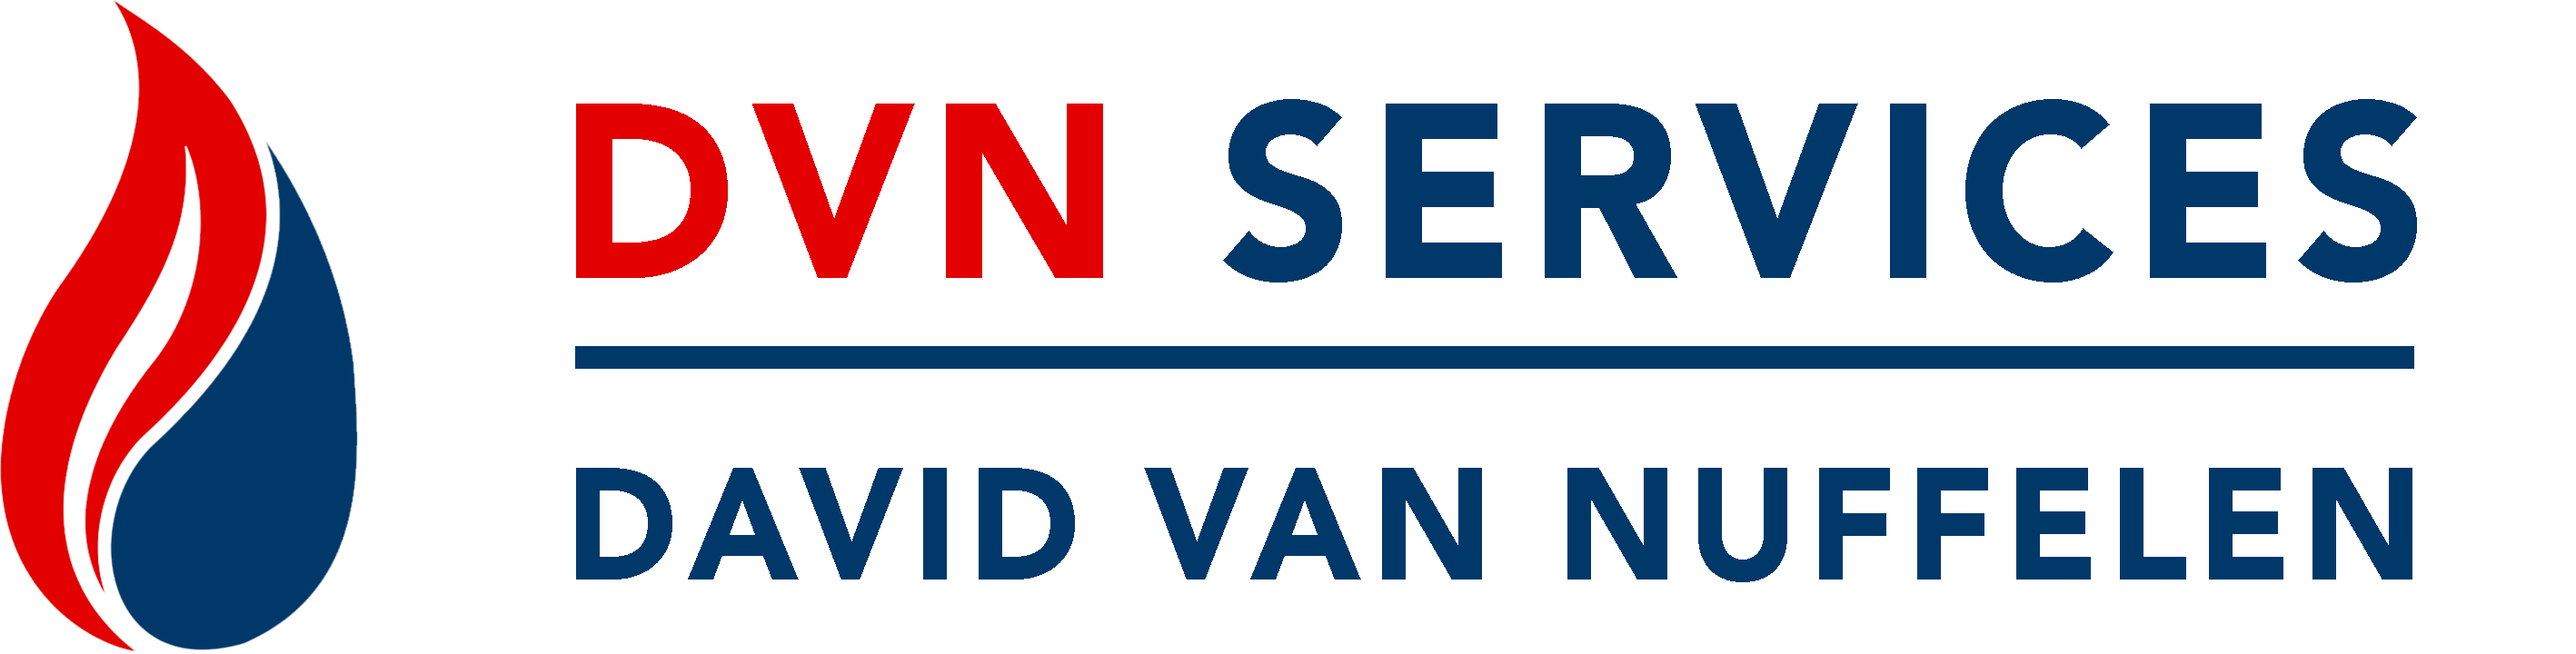 DVN Services – David Van Nuffelen